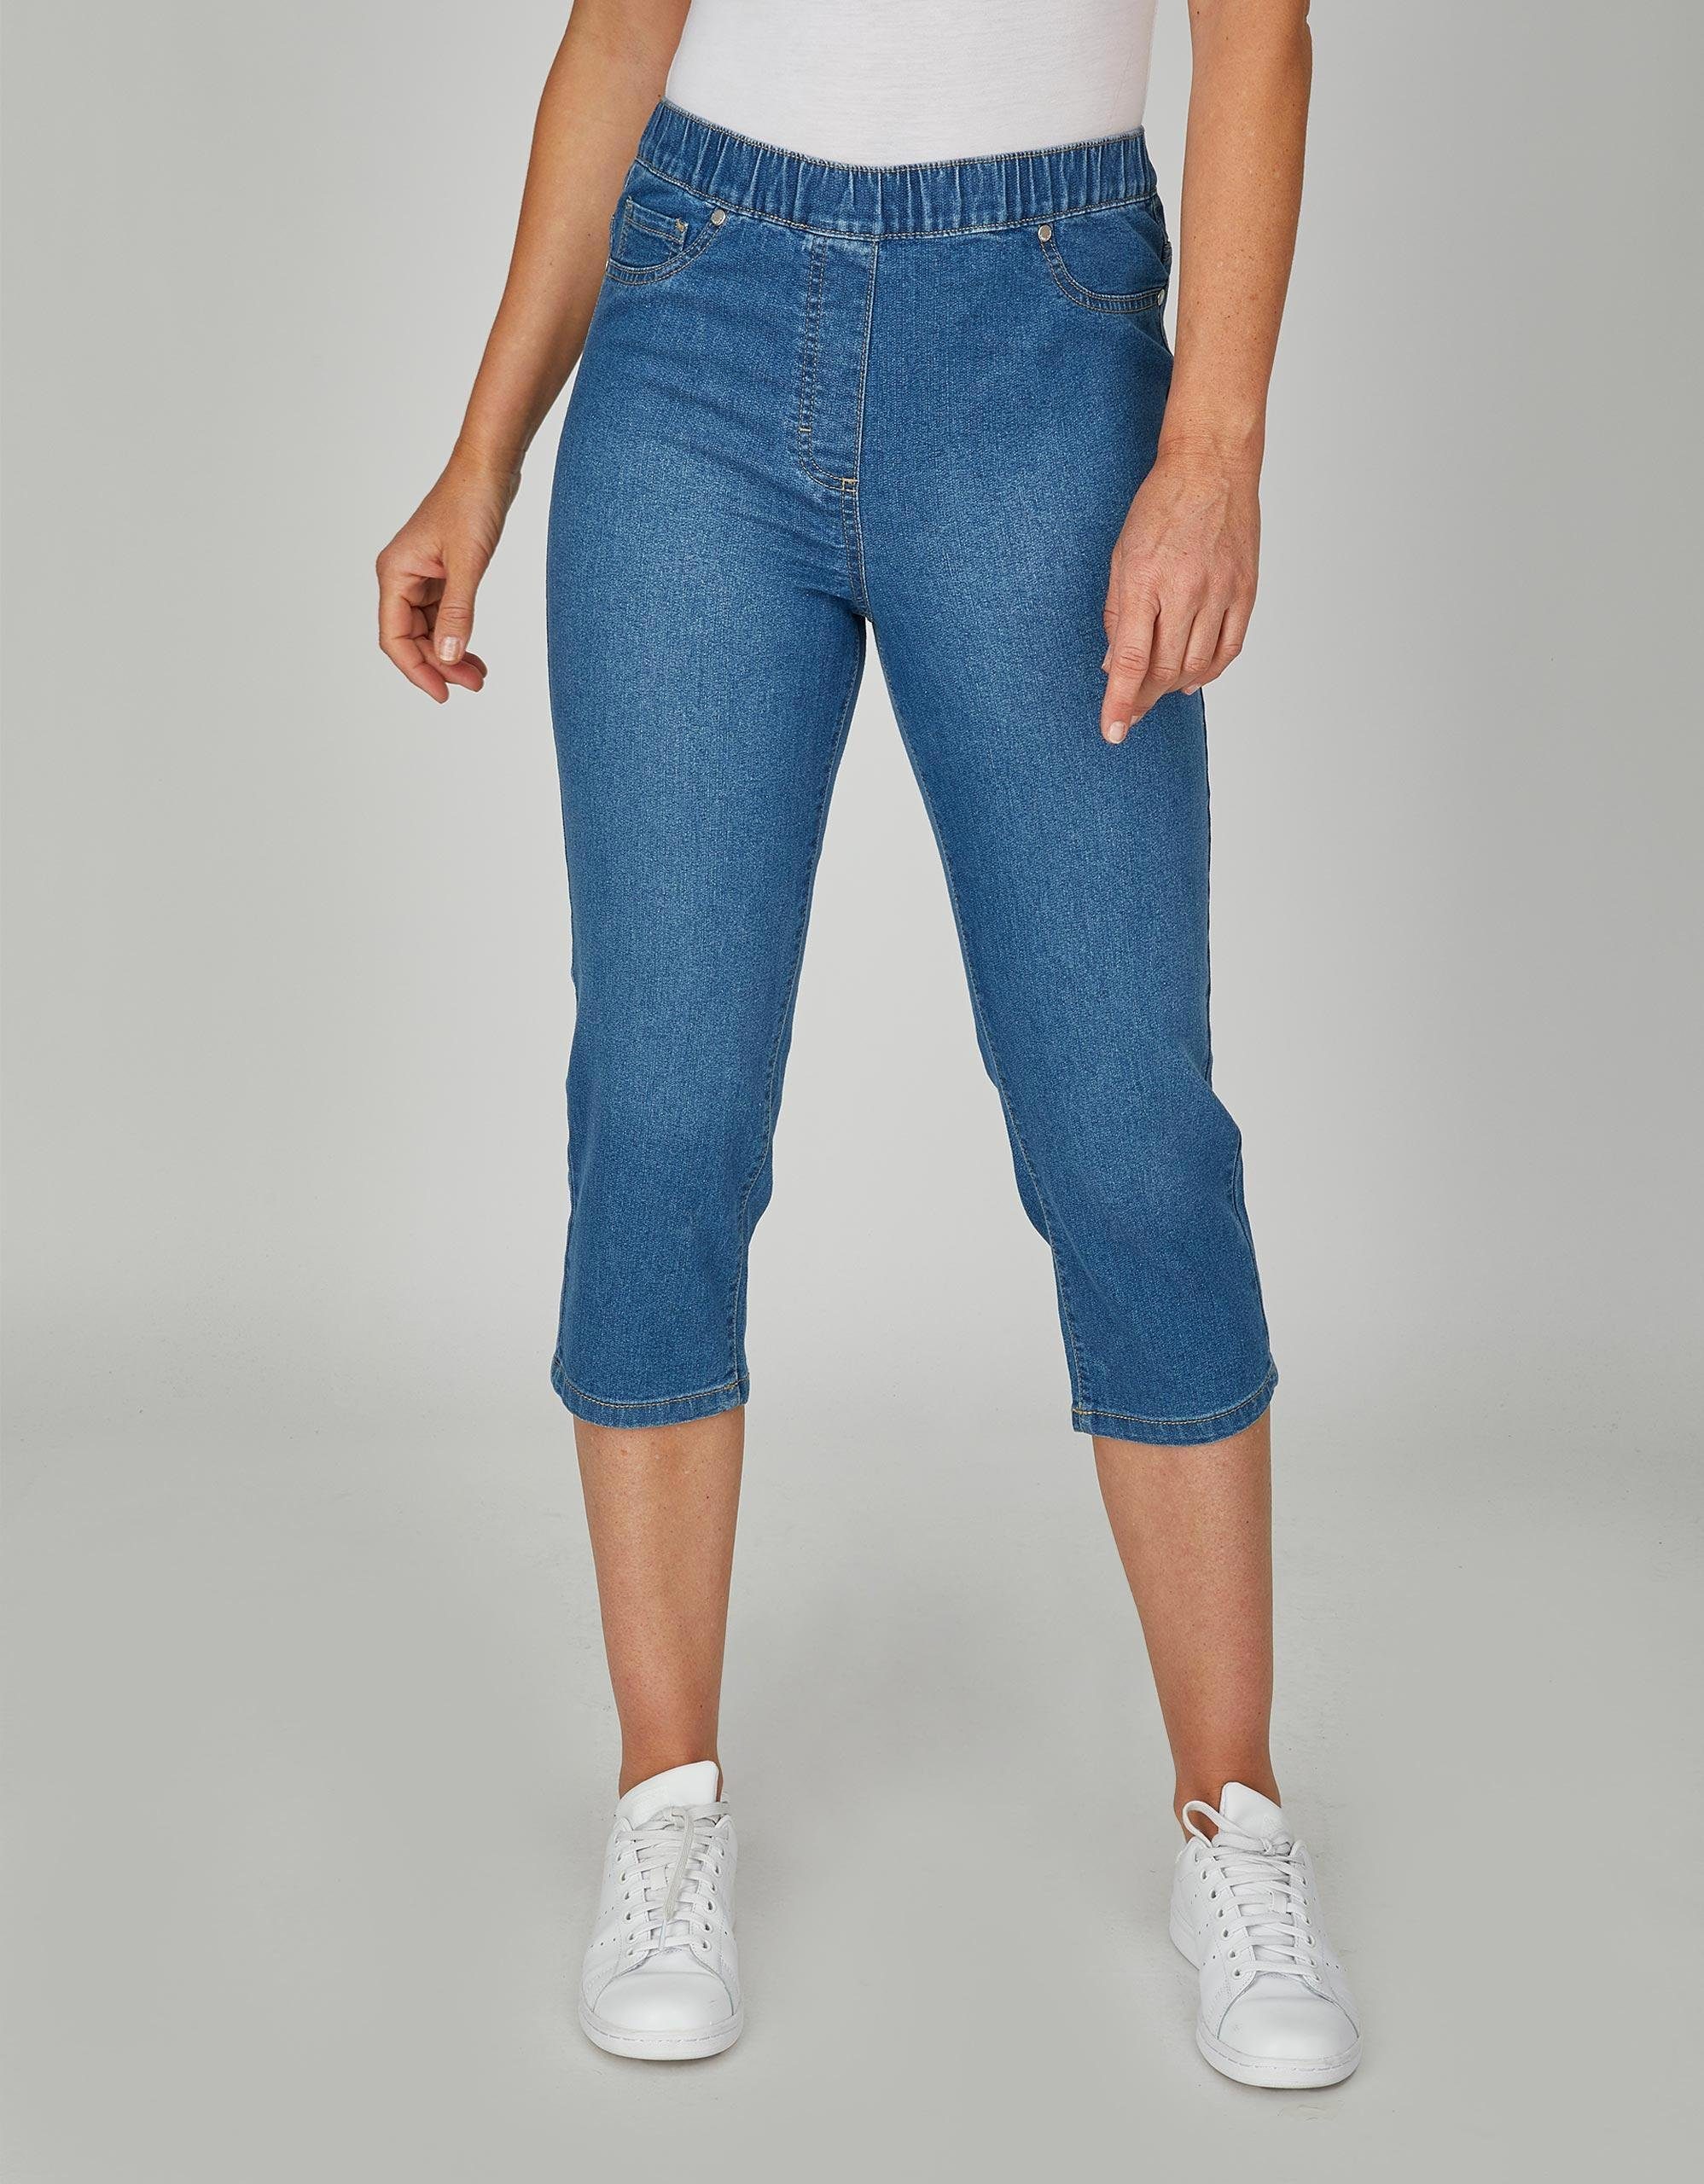 Bexleys woman by Adler Caprihose, Jeans in Capri-Länge mit Wascheffekt  online kaufen | OTTO